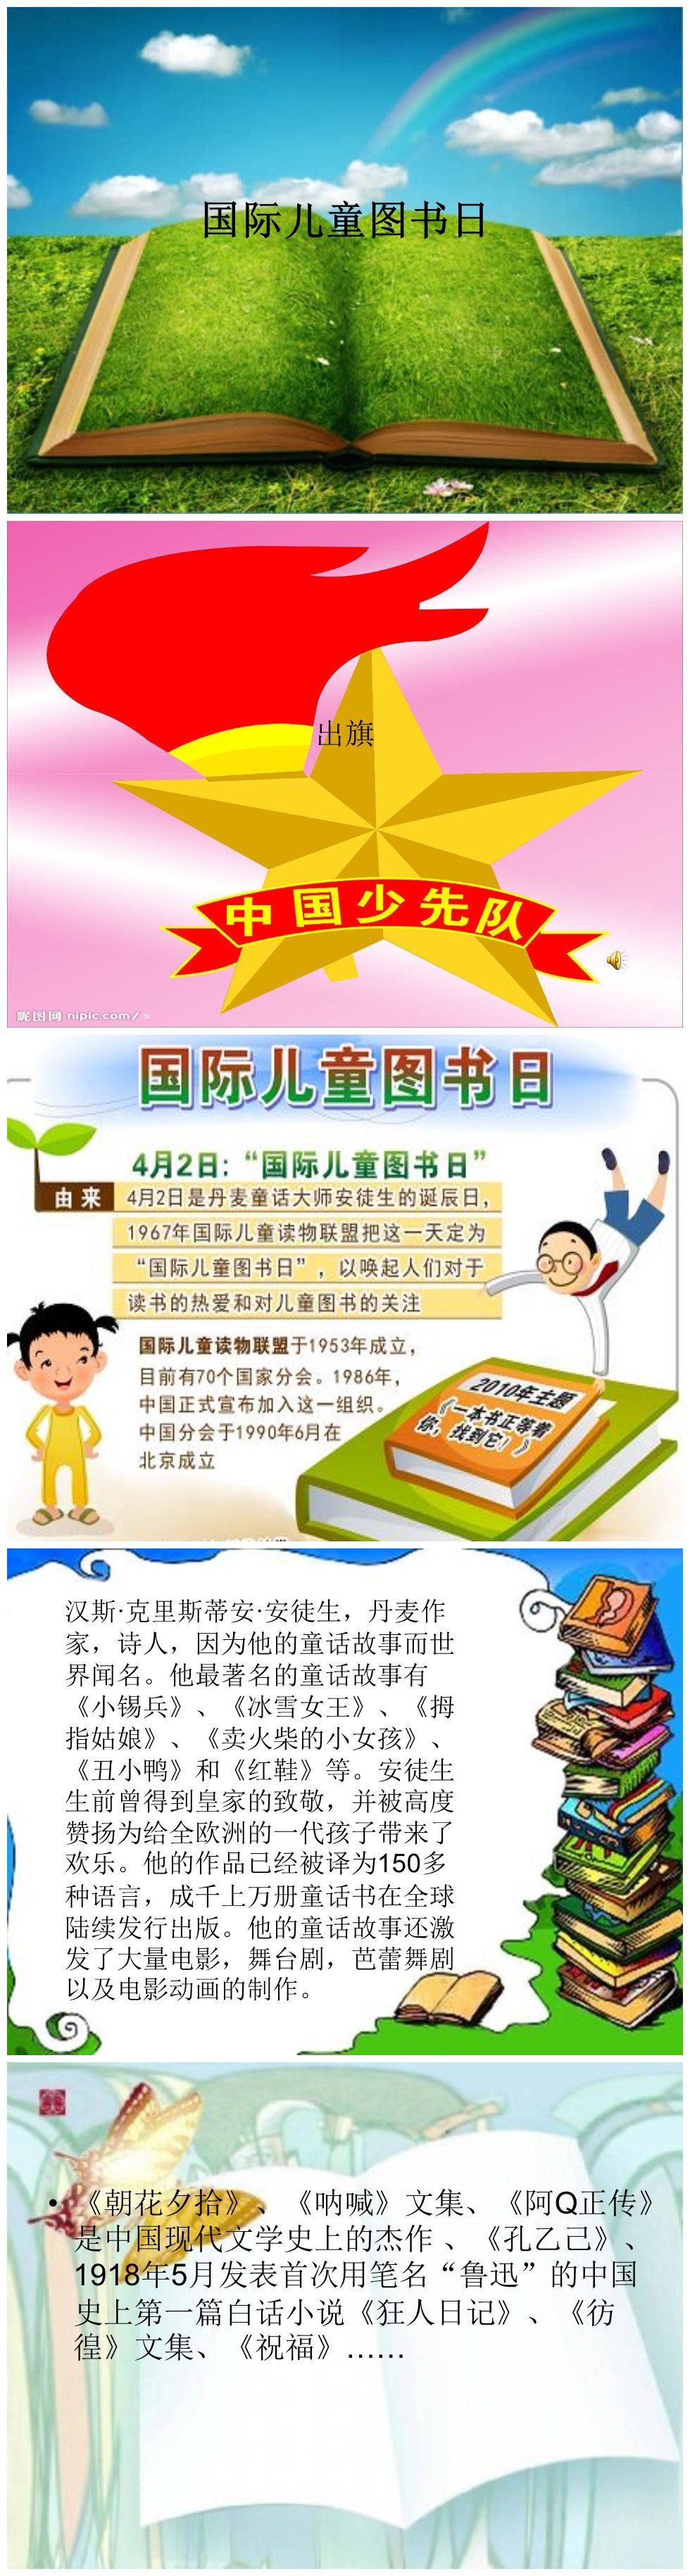 国际儿童图书日PPT模板下载-聚给网